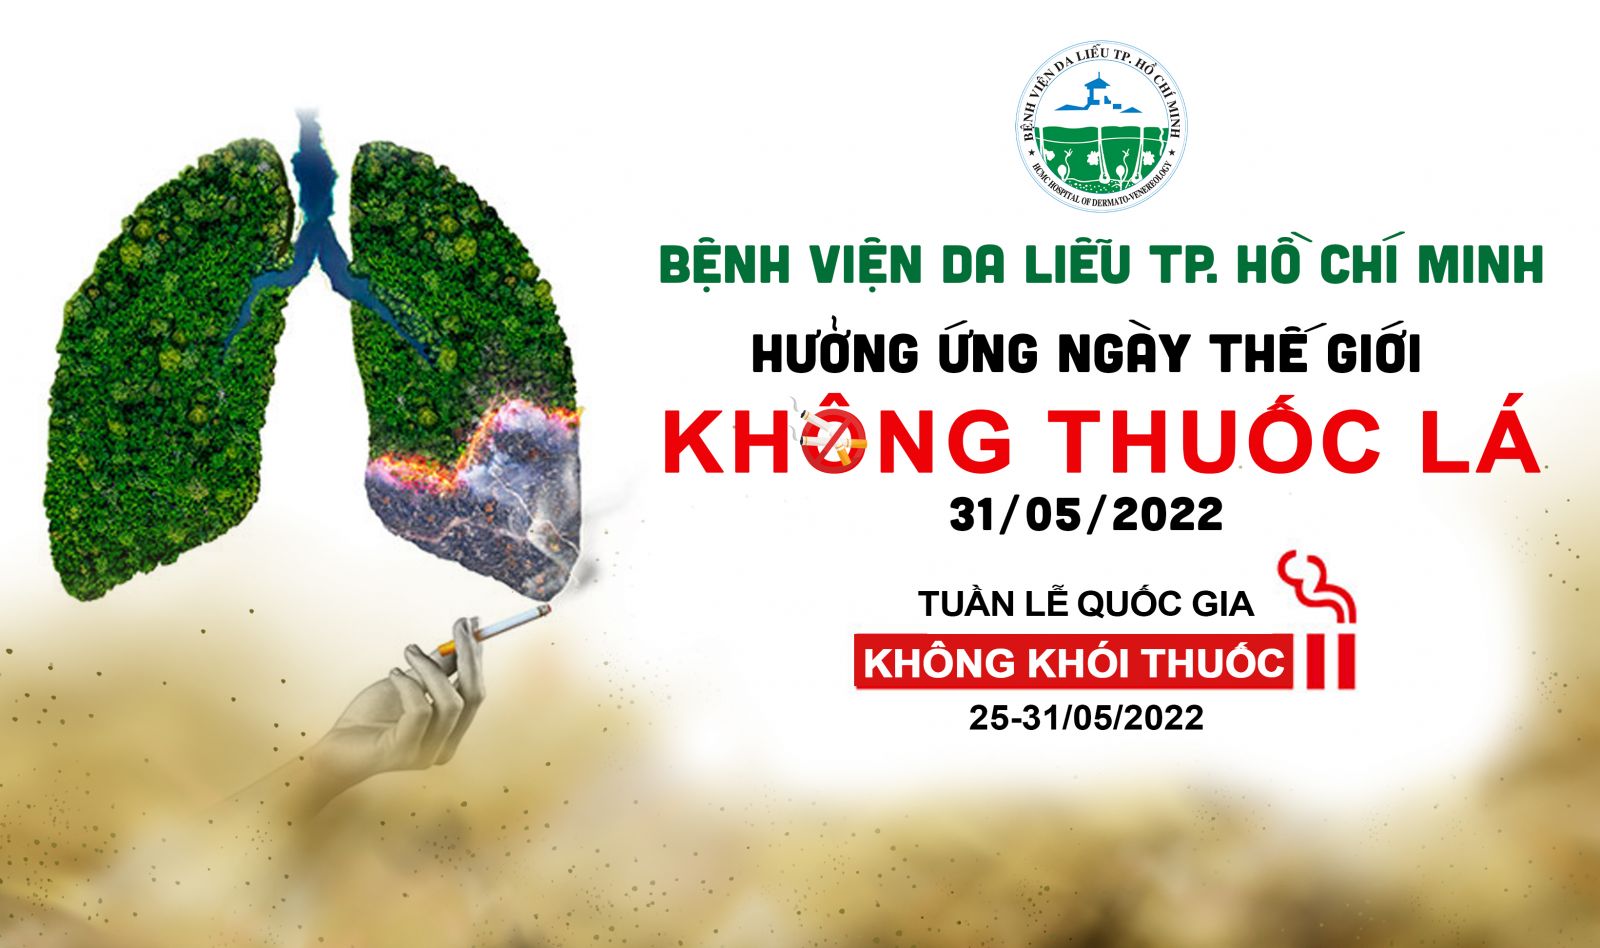 KHONG-Thuoc-La-banner